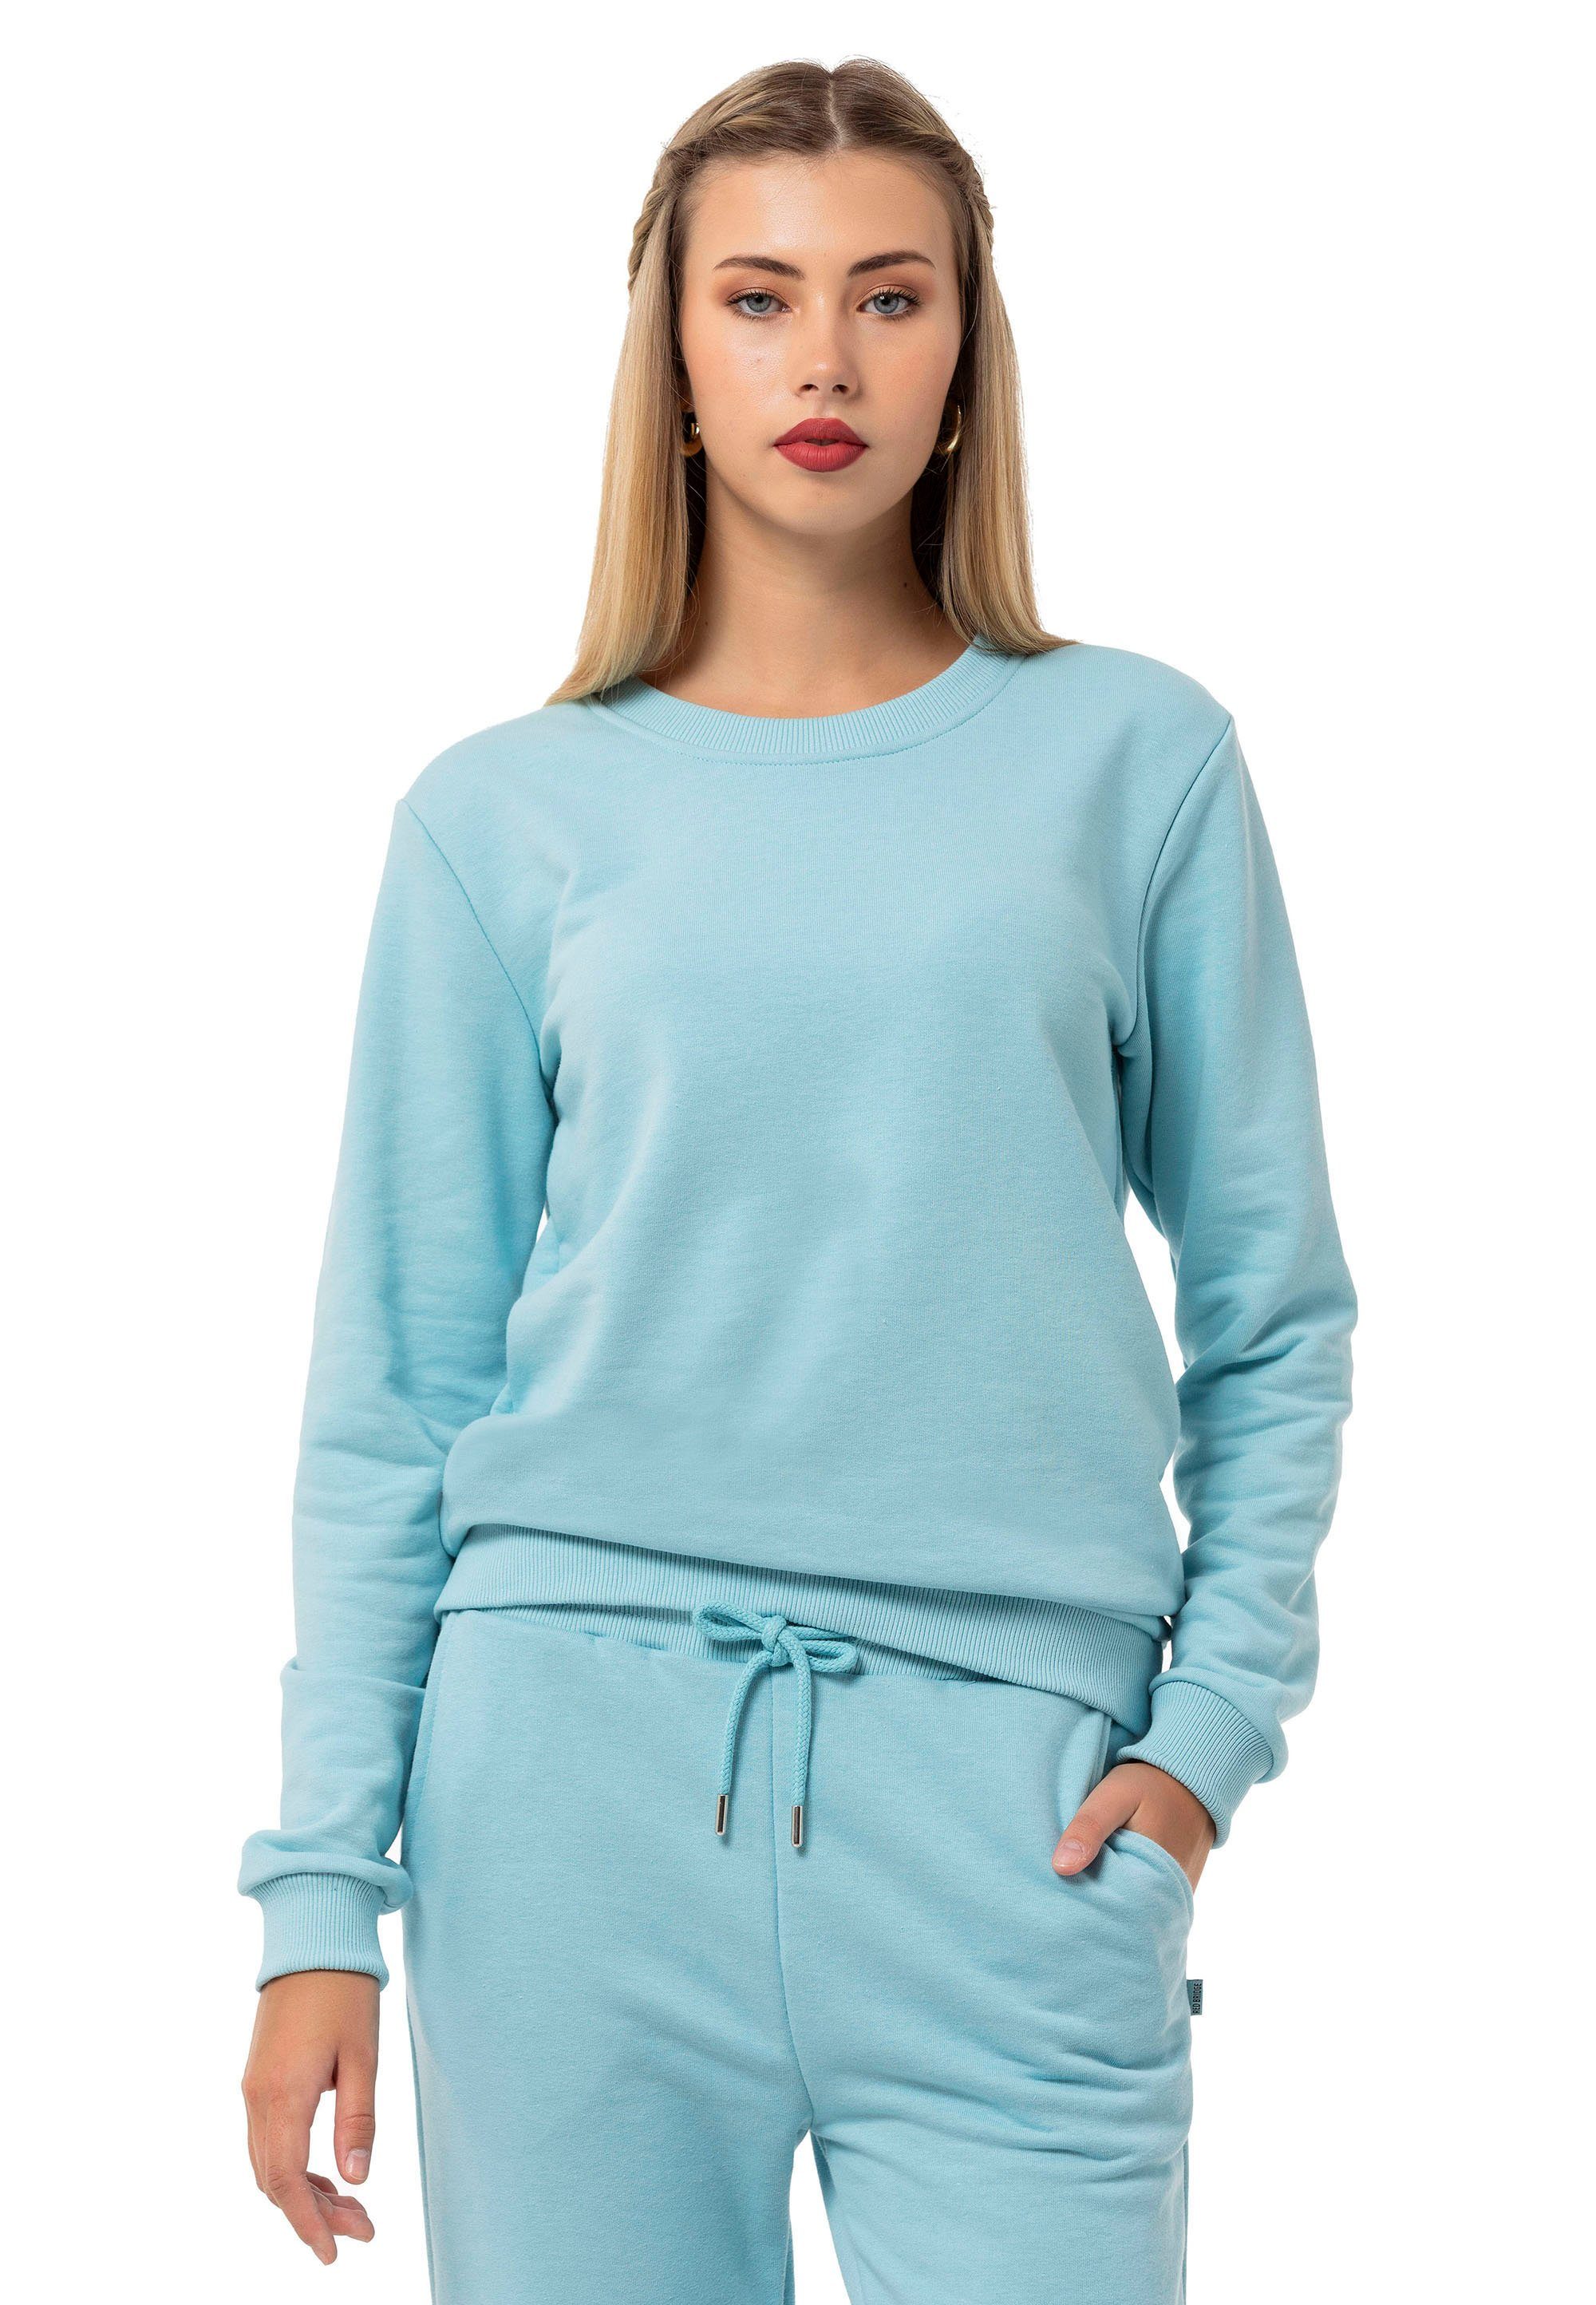 Pullover RedBridge Qualität Hellblau Sweatshirt Rundhals Premium